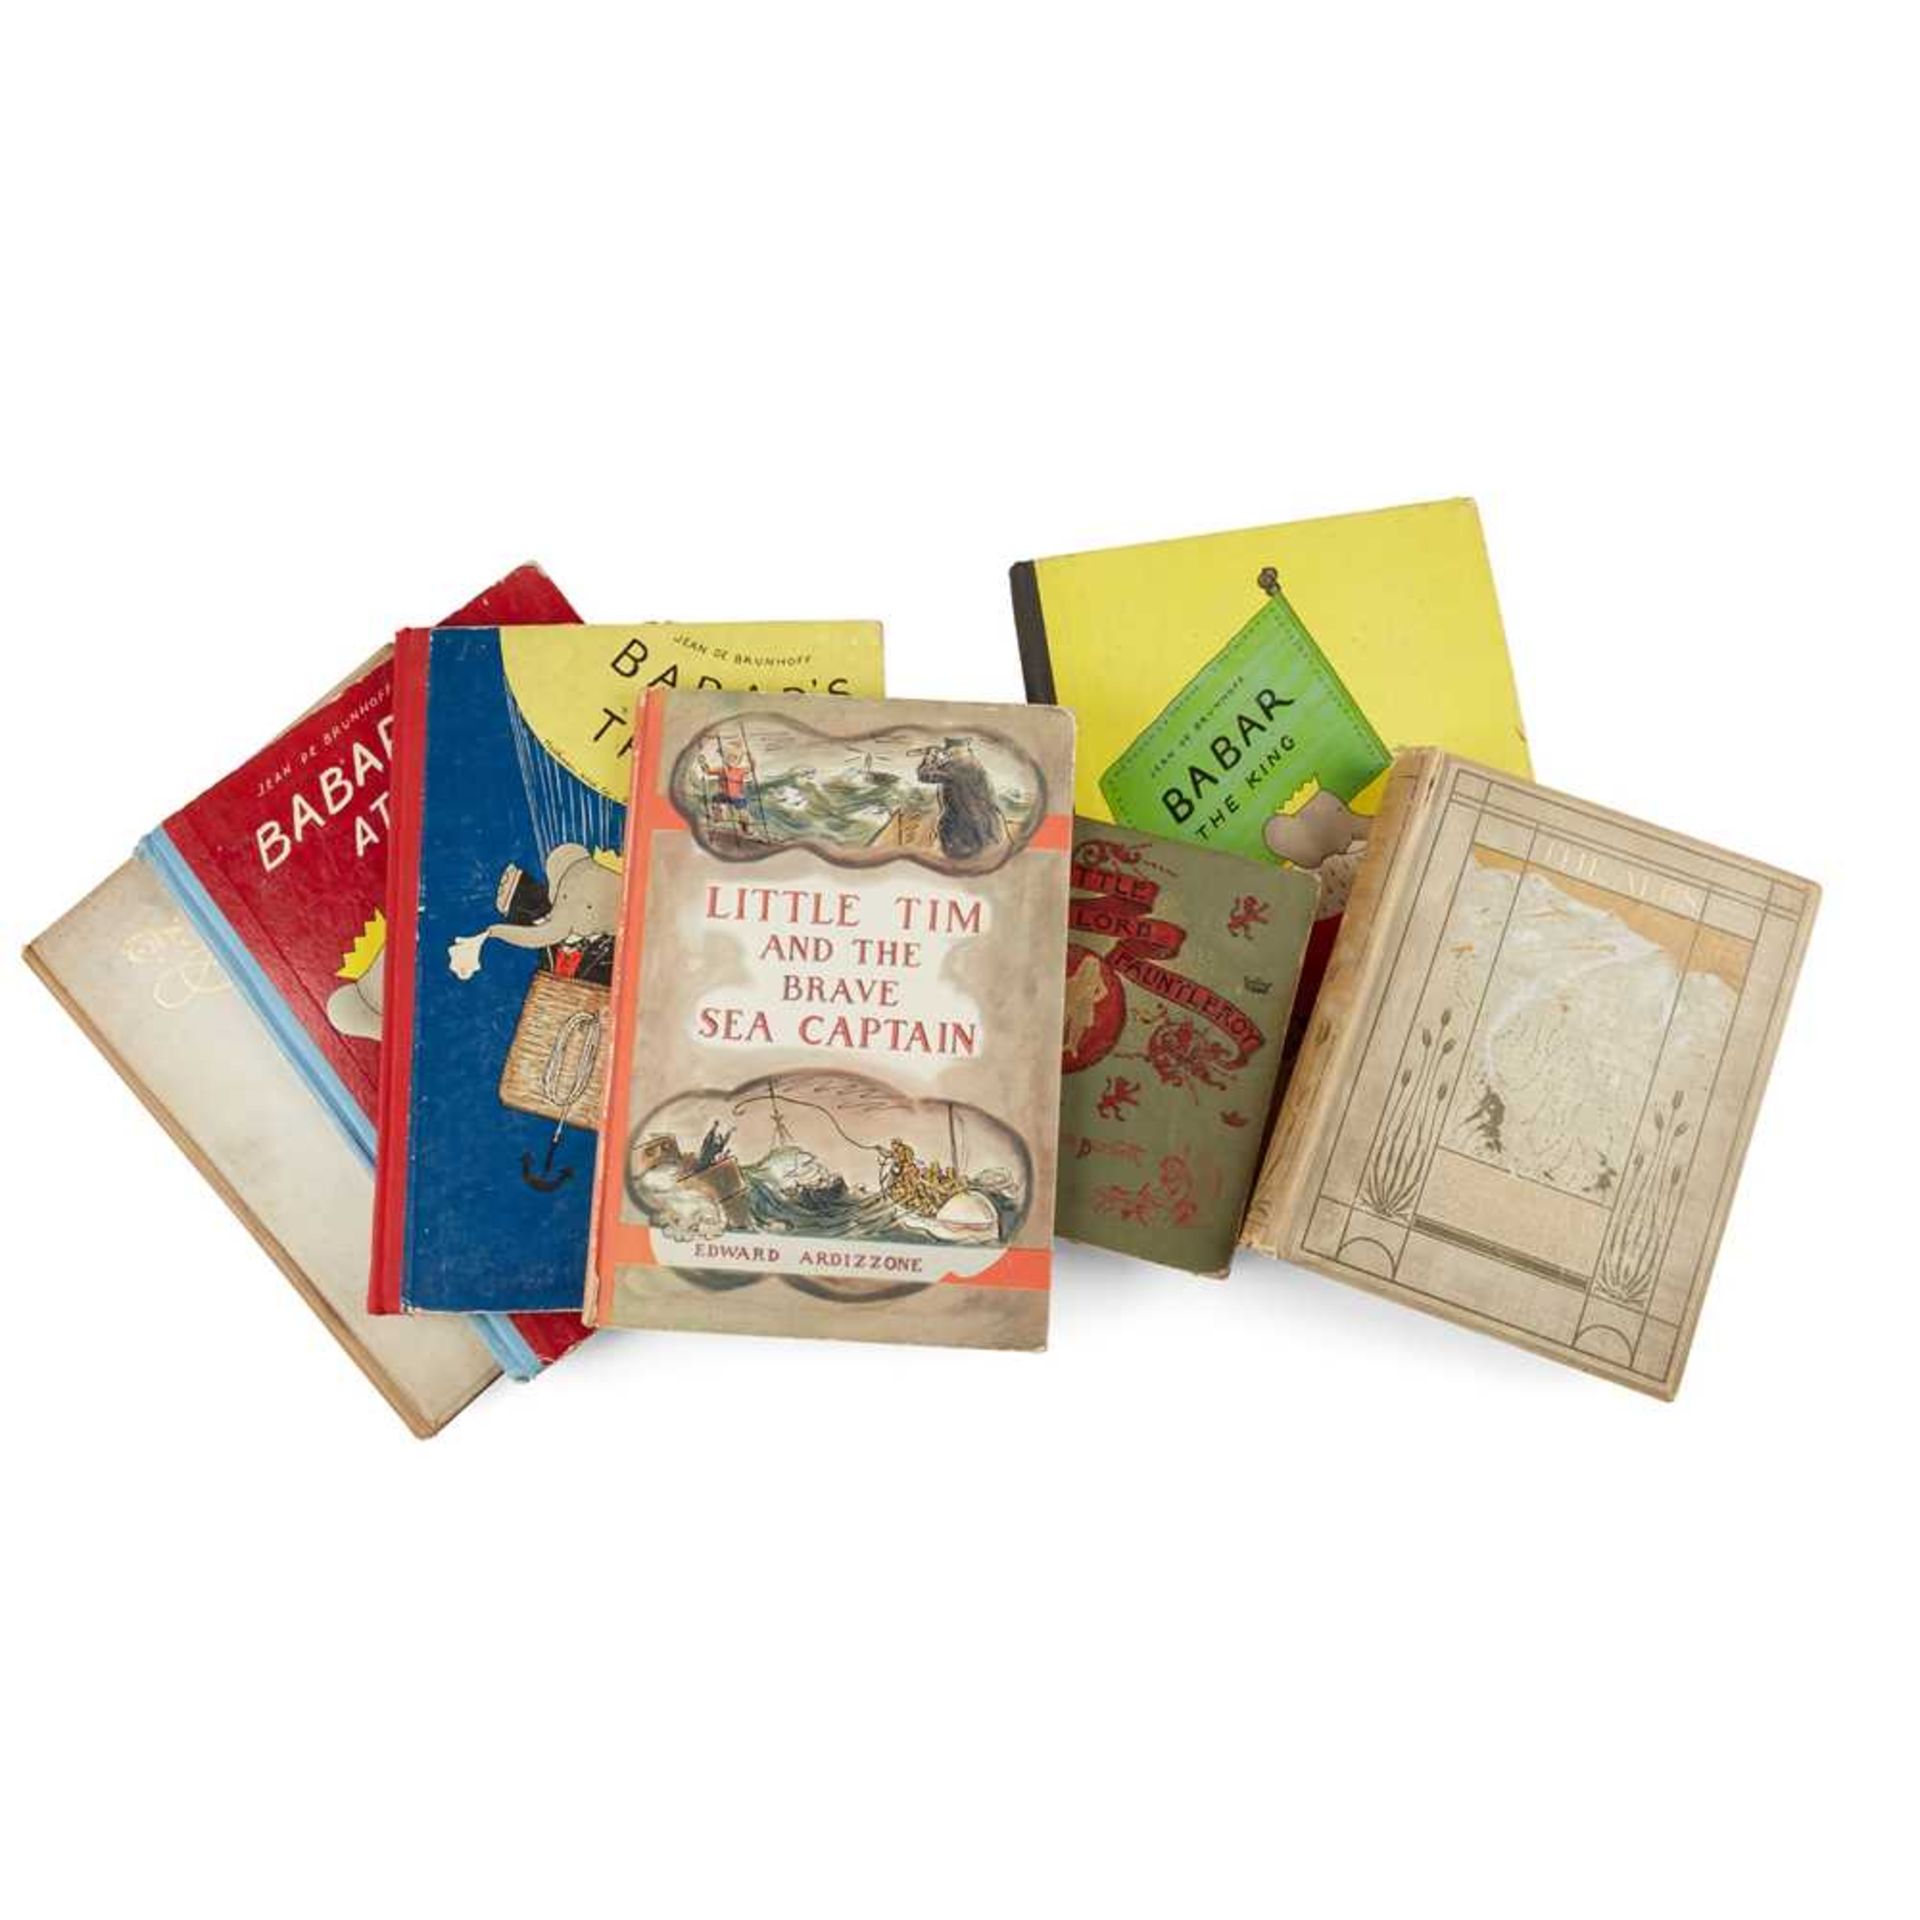 7 Children's Books Including Ardizzone, de Brunhof and Frances Hodgson Burnett